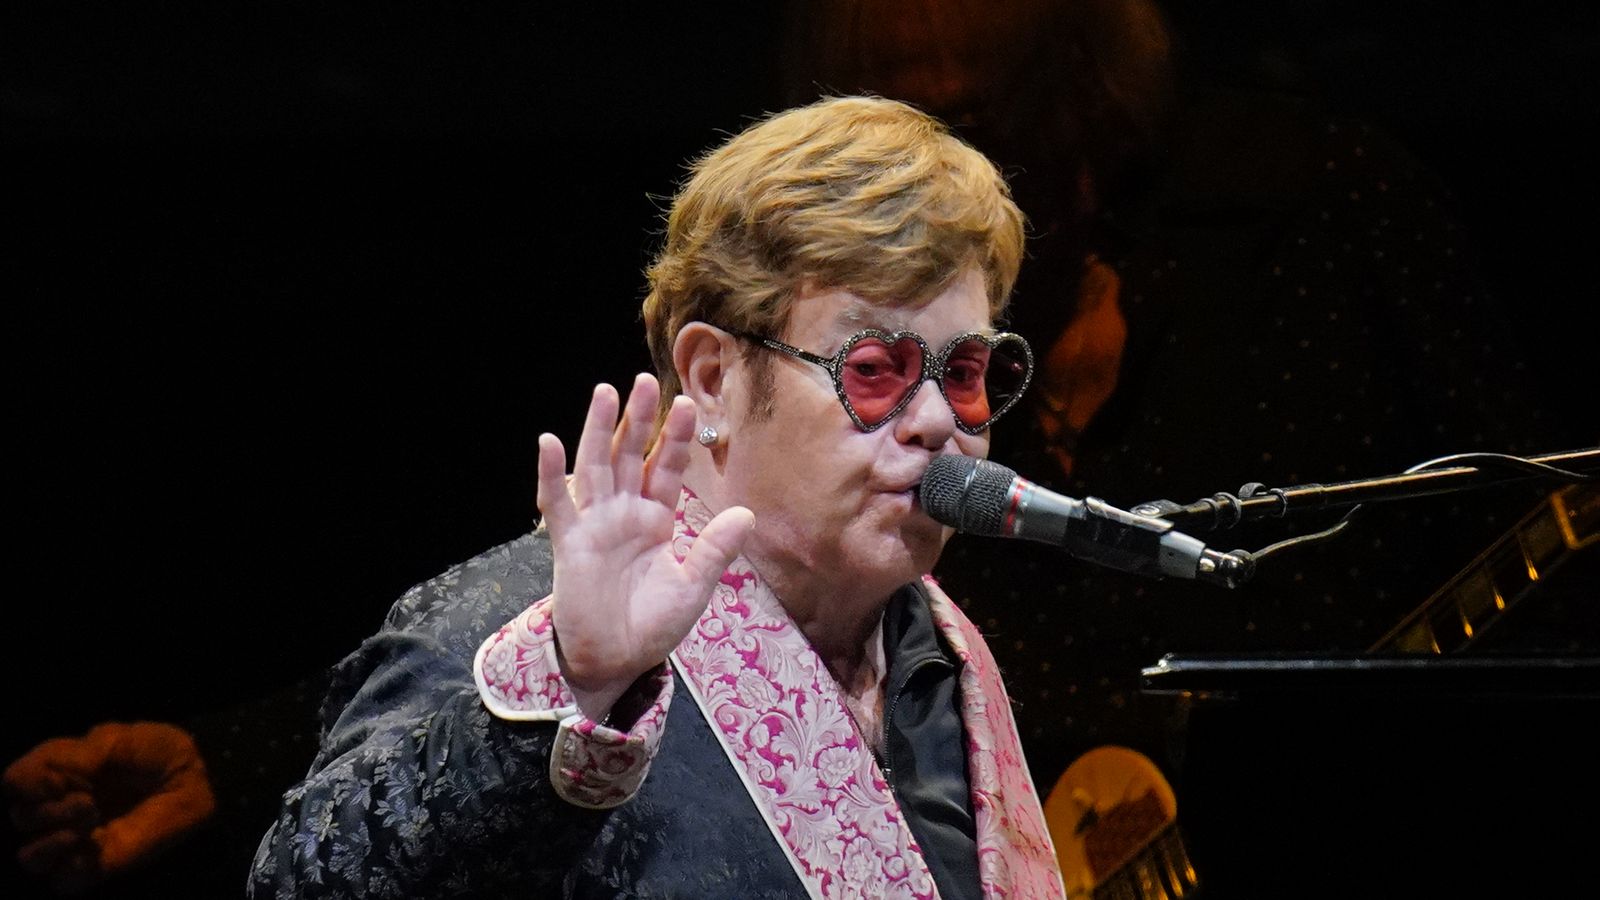 Elton John est soigné à l’hôpital après une chute à son domicile en France |  Arts et actualités artistiques